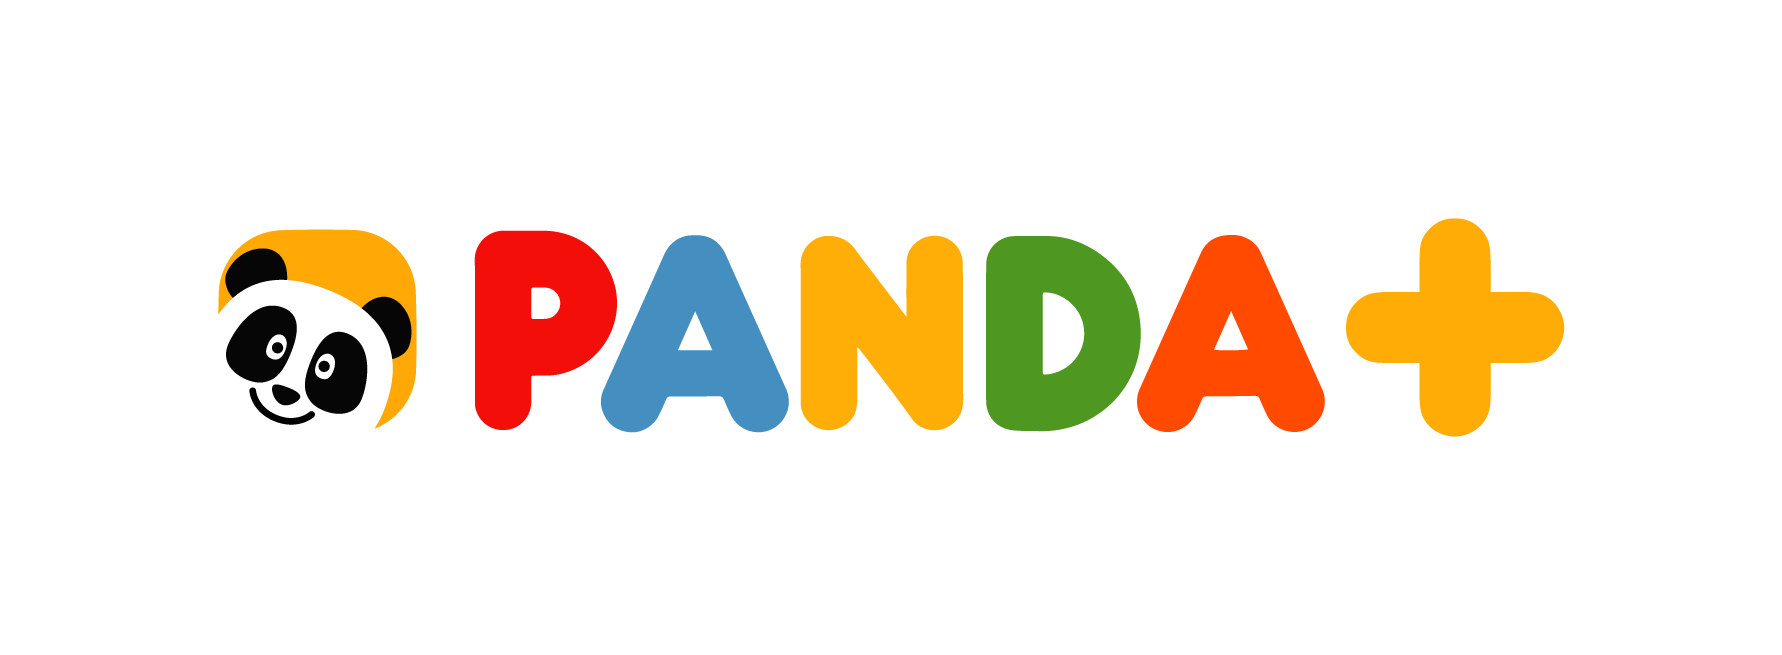 Série de animação produzida pela FPF chega aos canais Panda e Biggs - Meios  & Publicidade - Meios & Publicidade